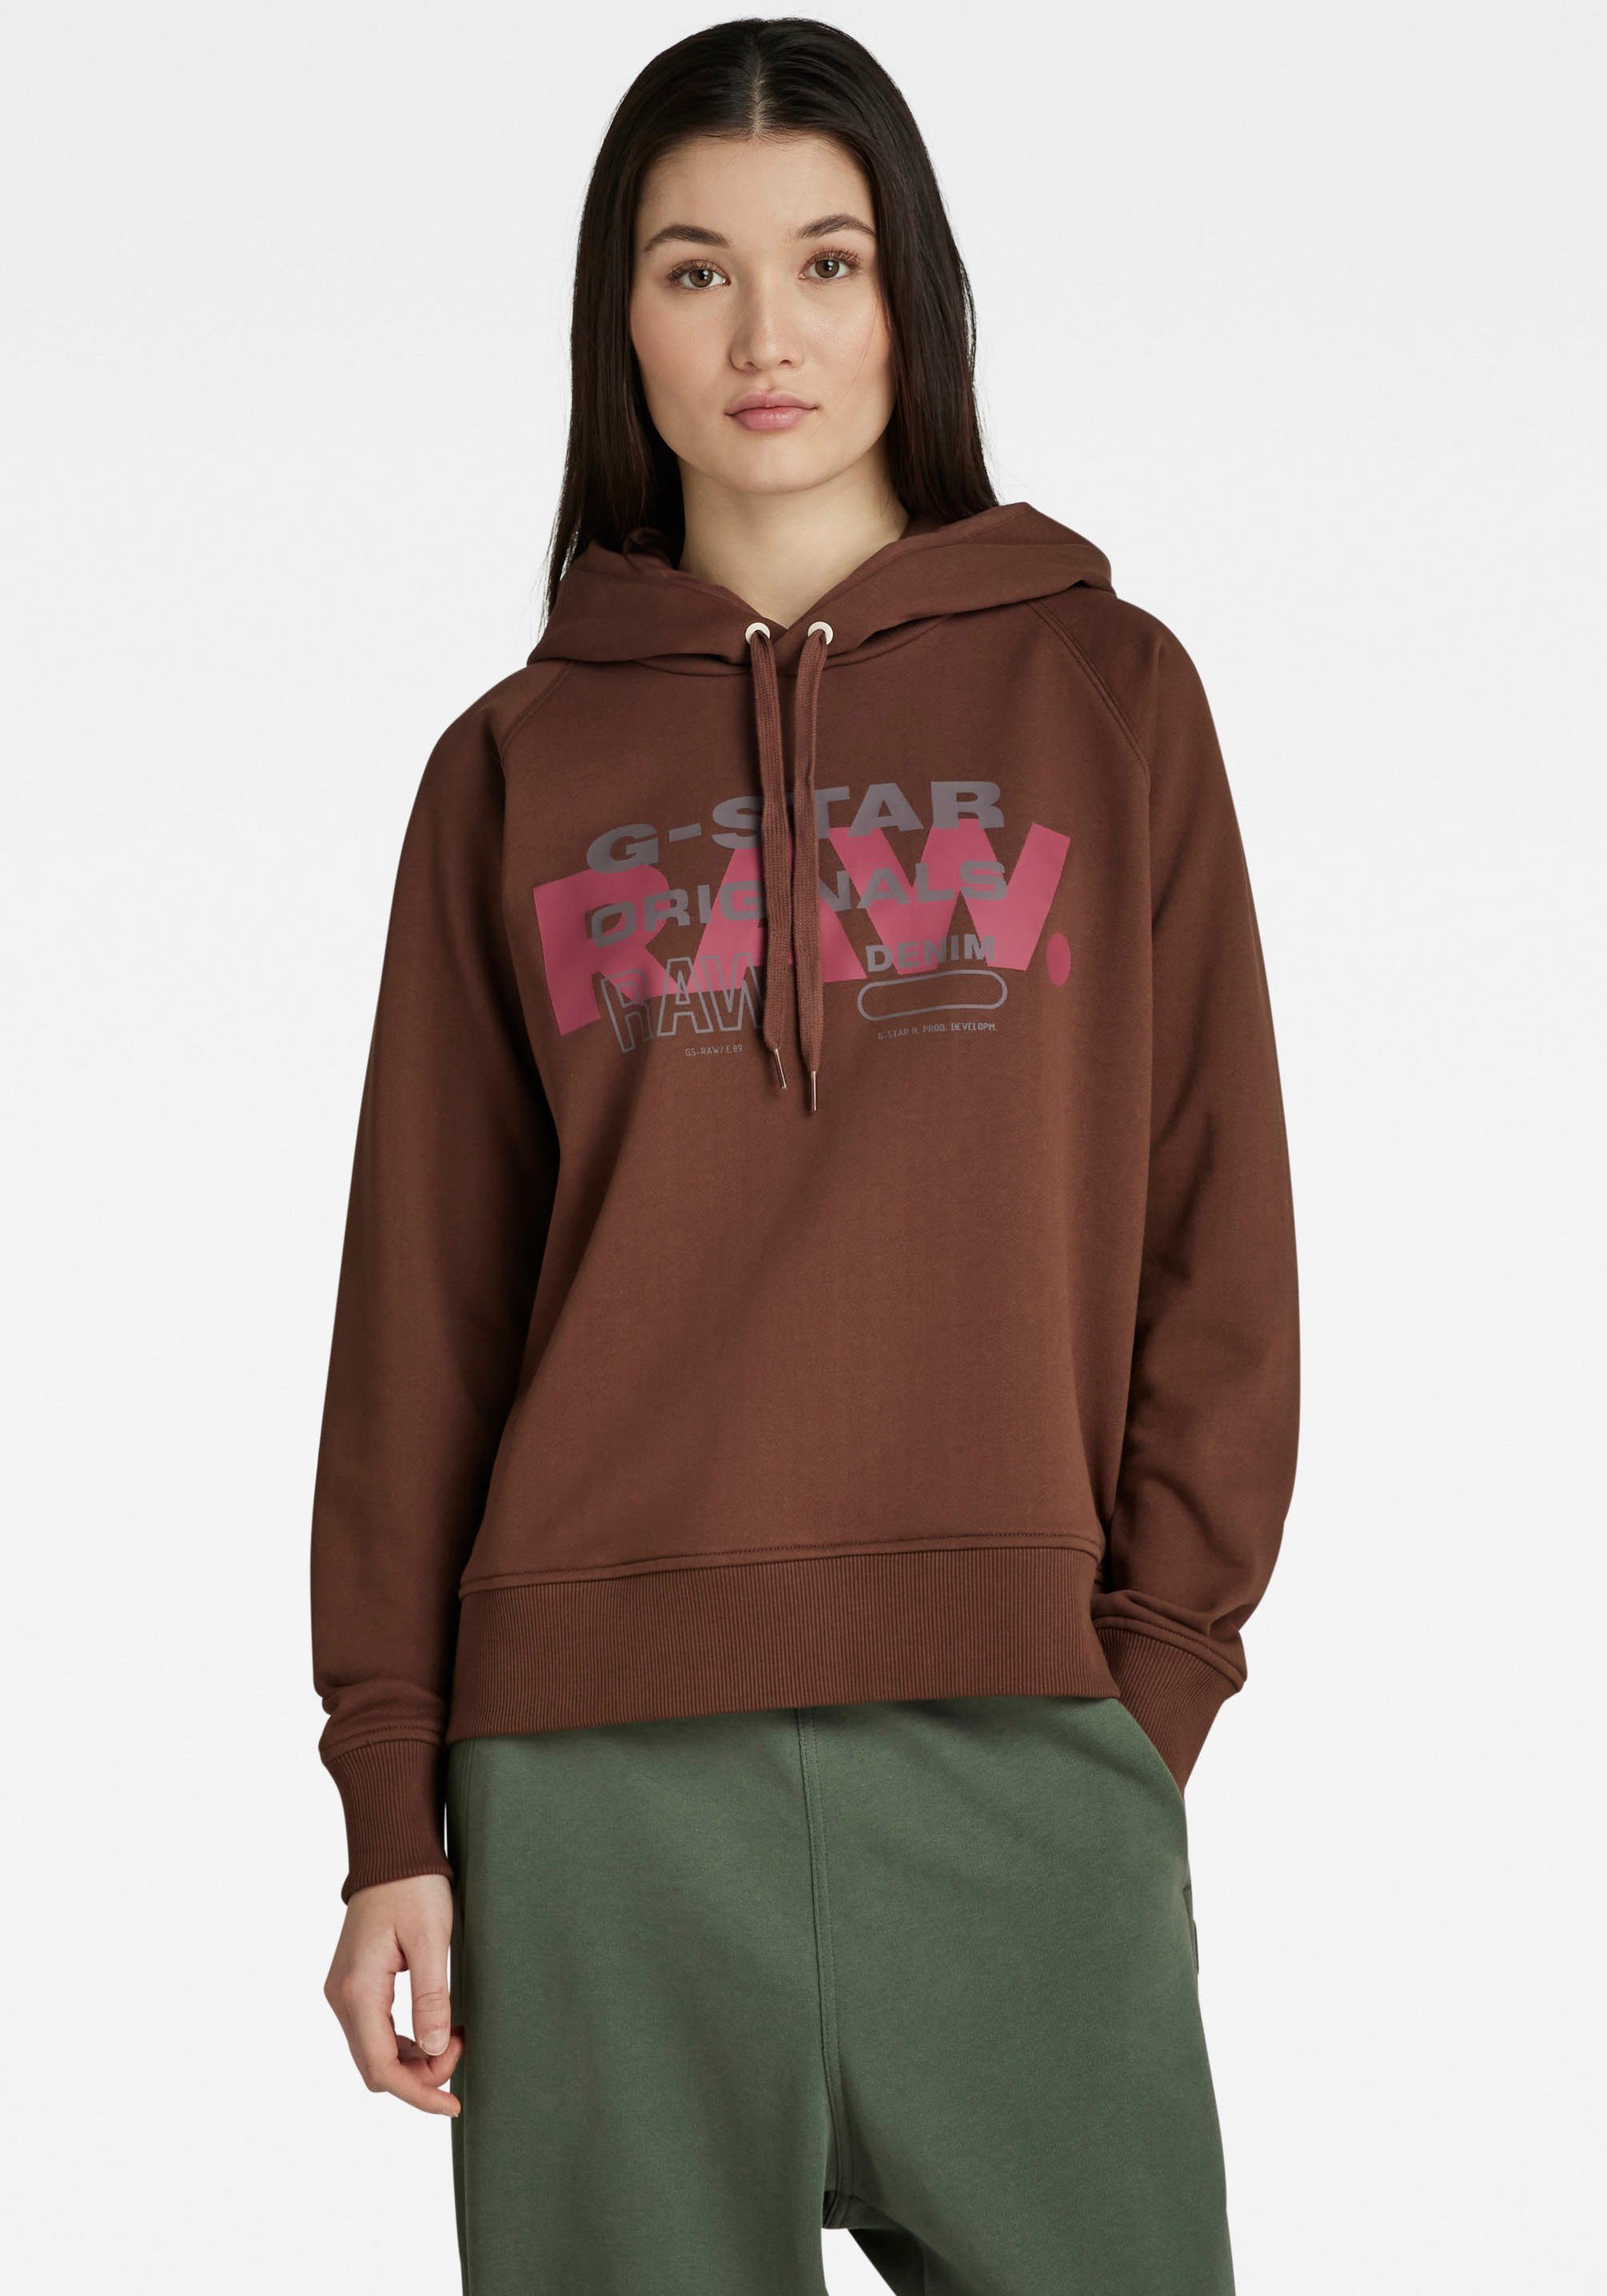 G-Star RAW Sweatshirt Sweatshirt Raglan raw originals hdd sw mit Grafikprint vorne auf der Brust chocolate lab (braun bedruckt)